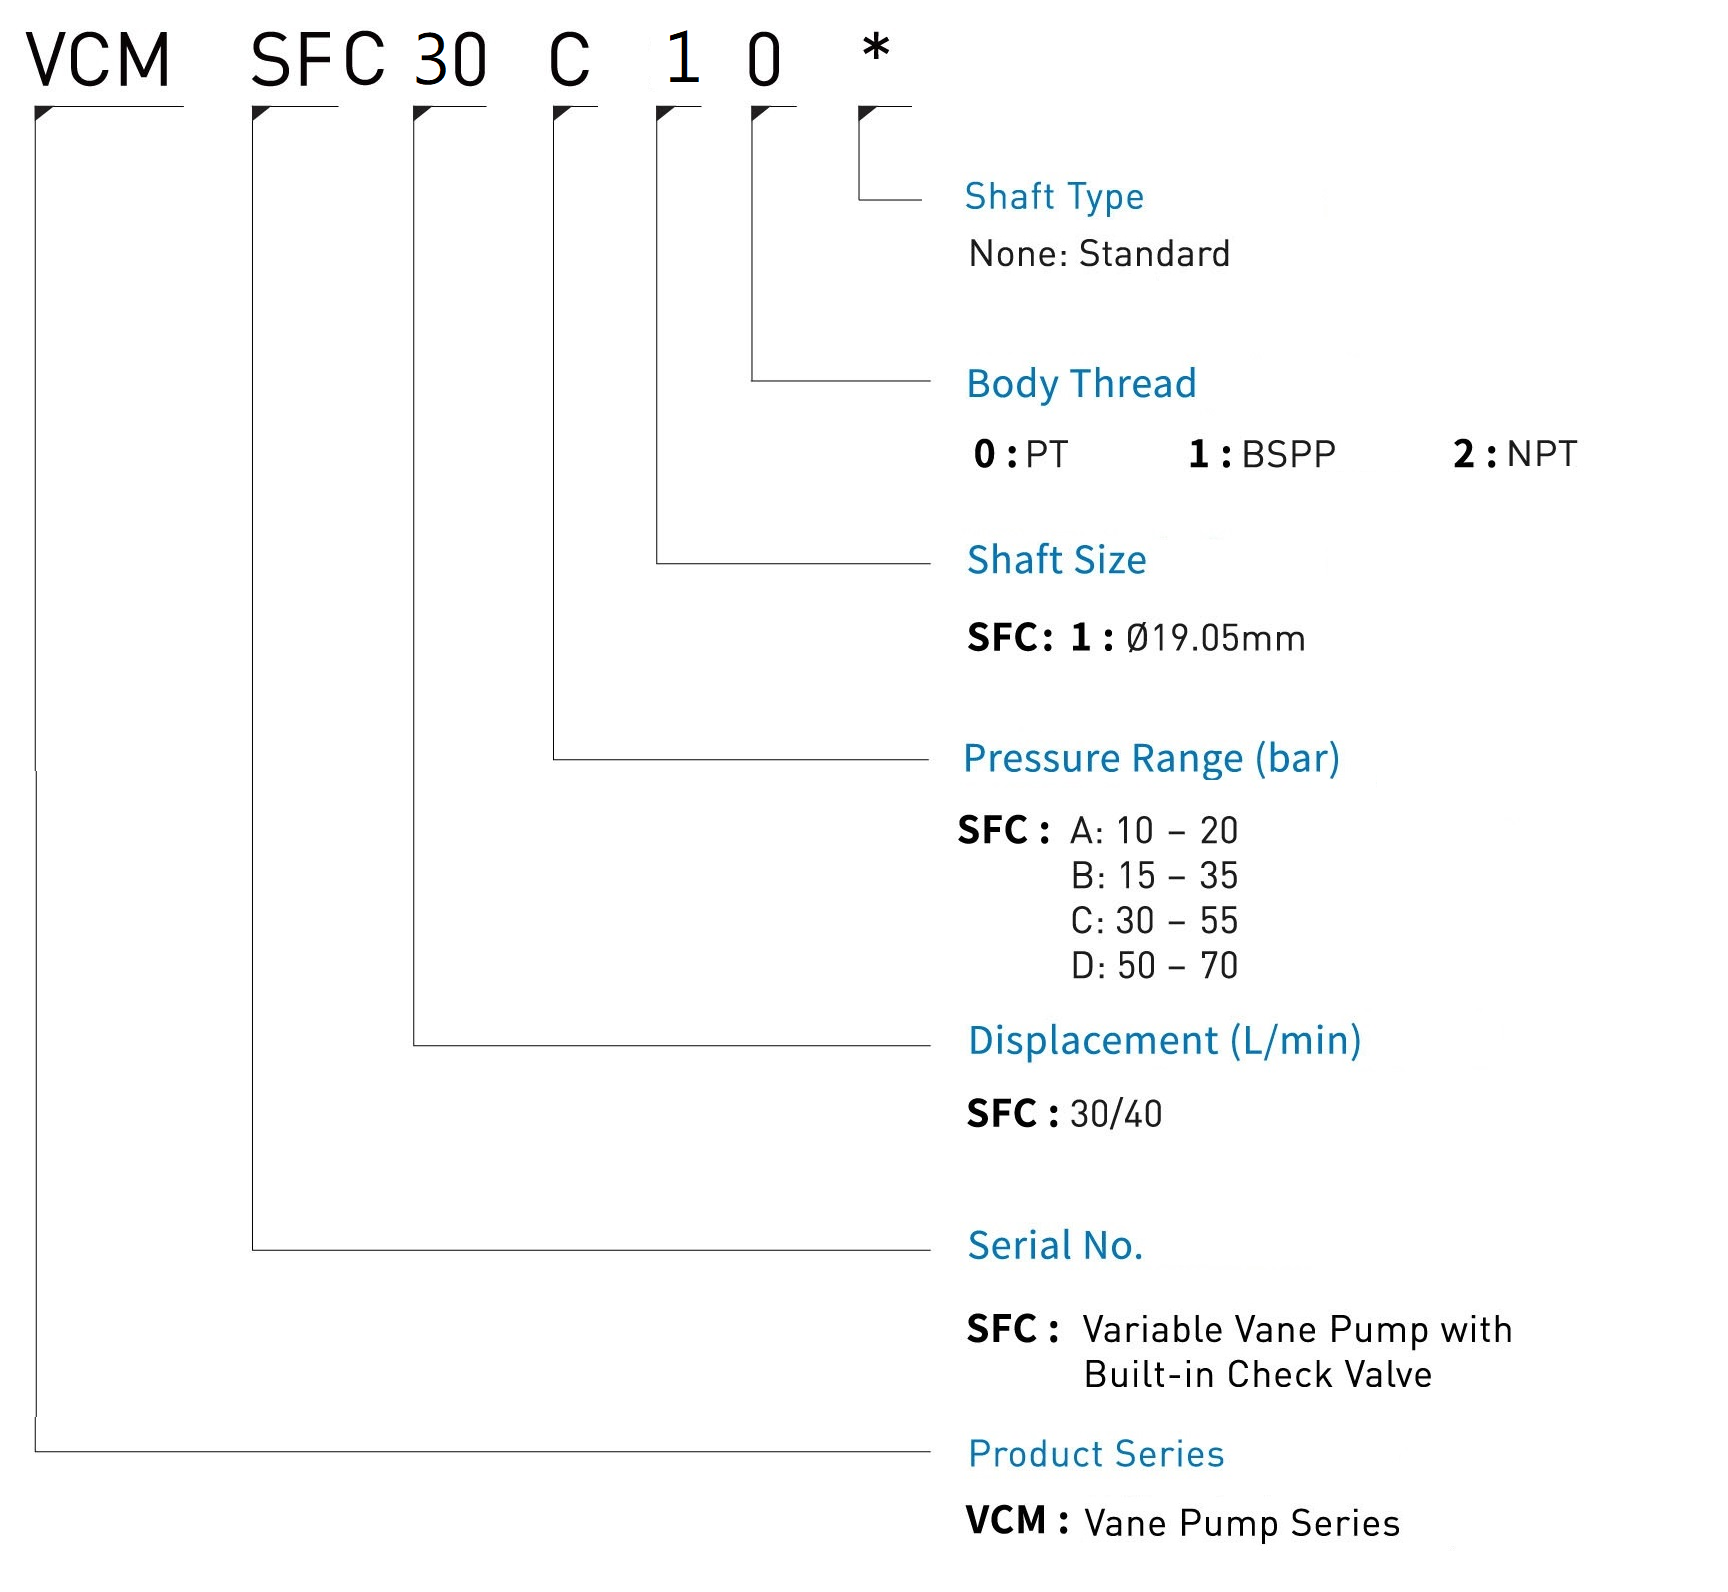 CML チェック弁内蔵可変ベーンポンプSFC モデルコード